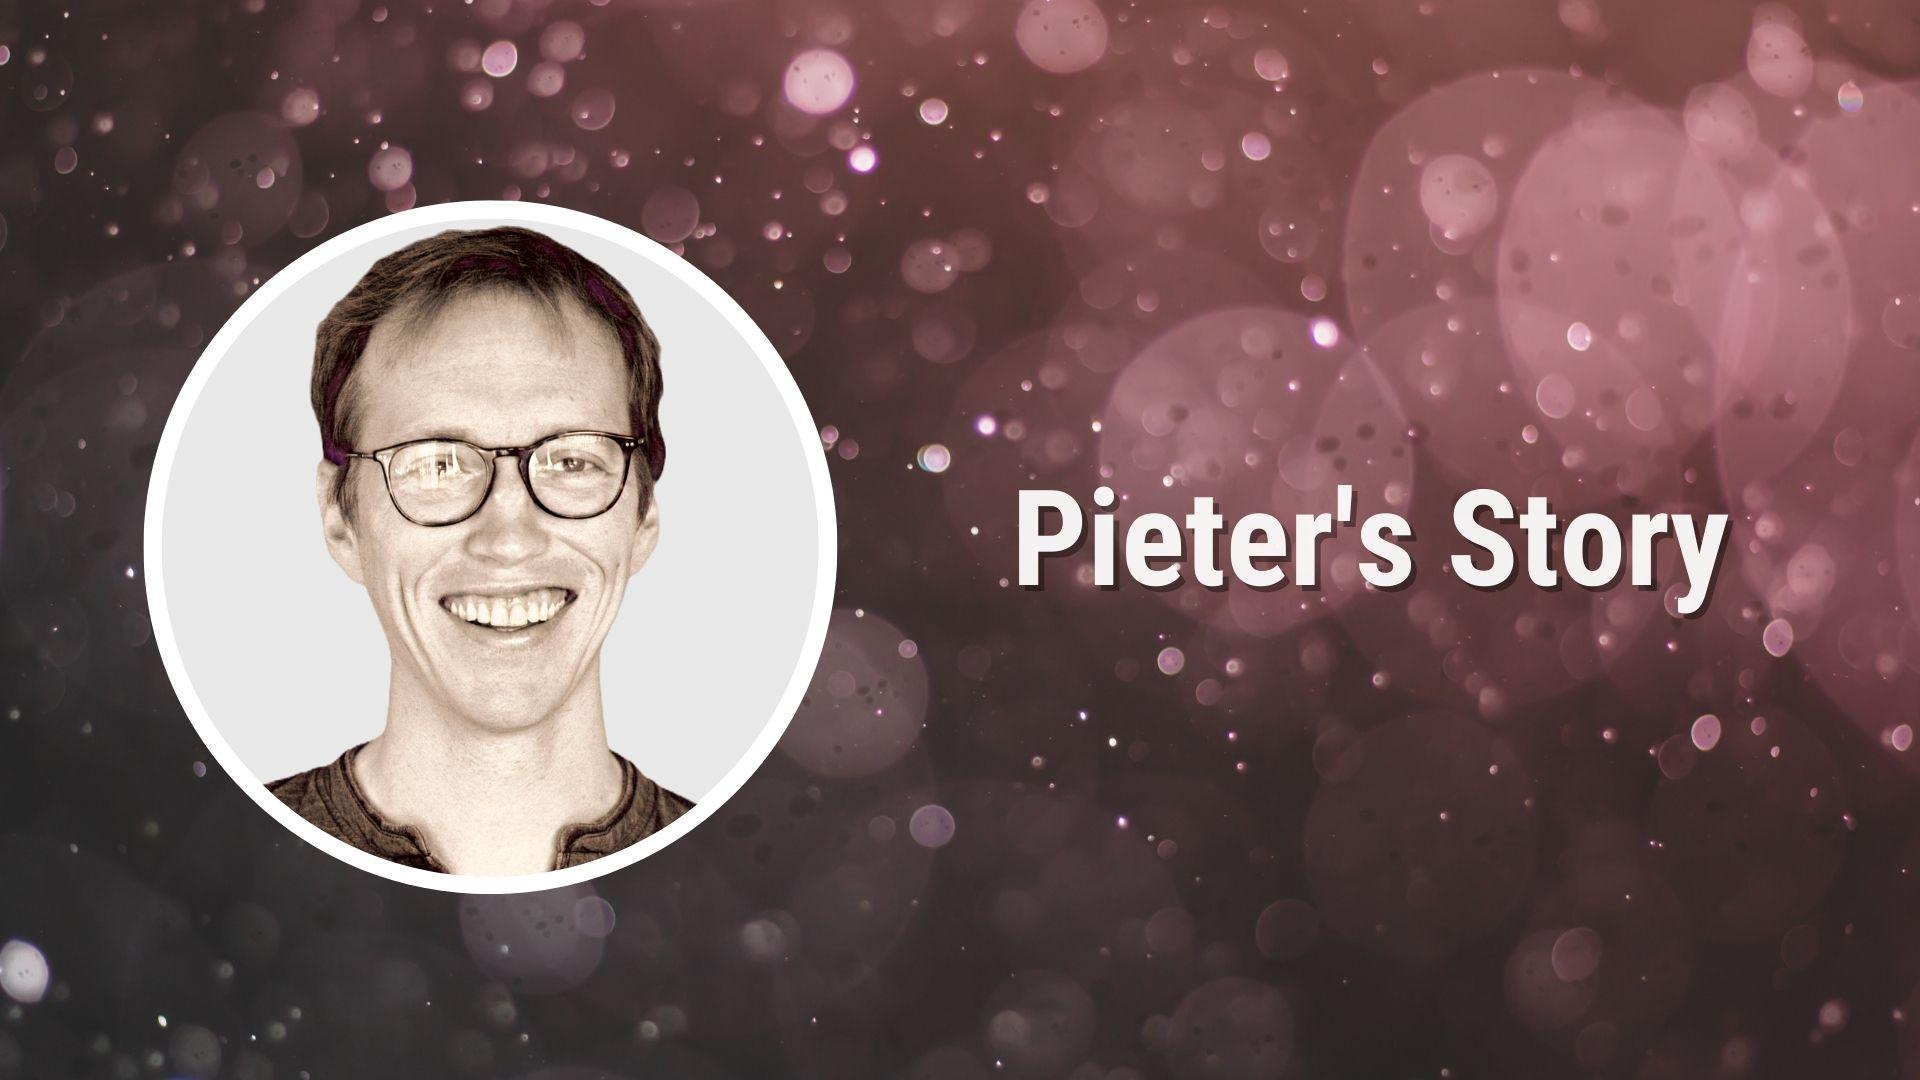 Pieter’s Story: Teamwork and entrepreneurship